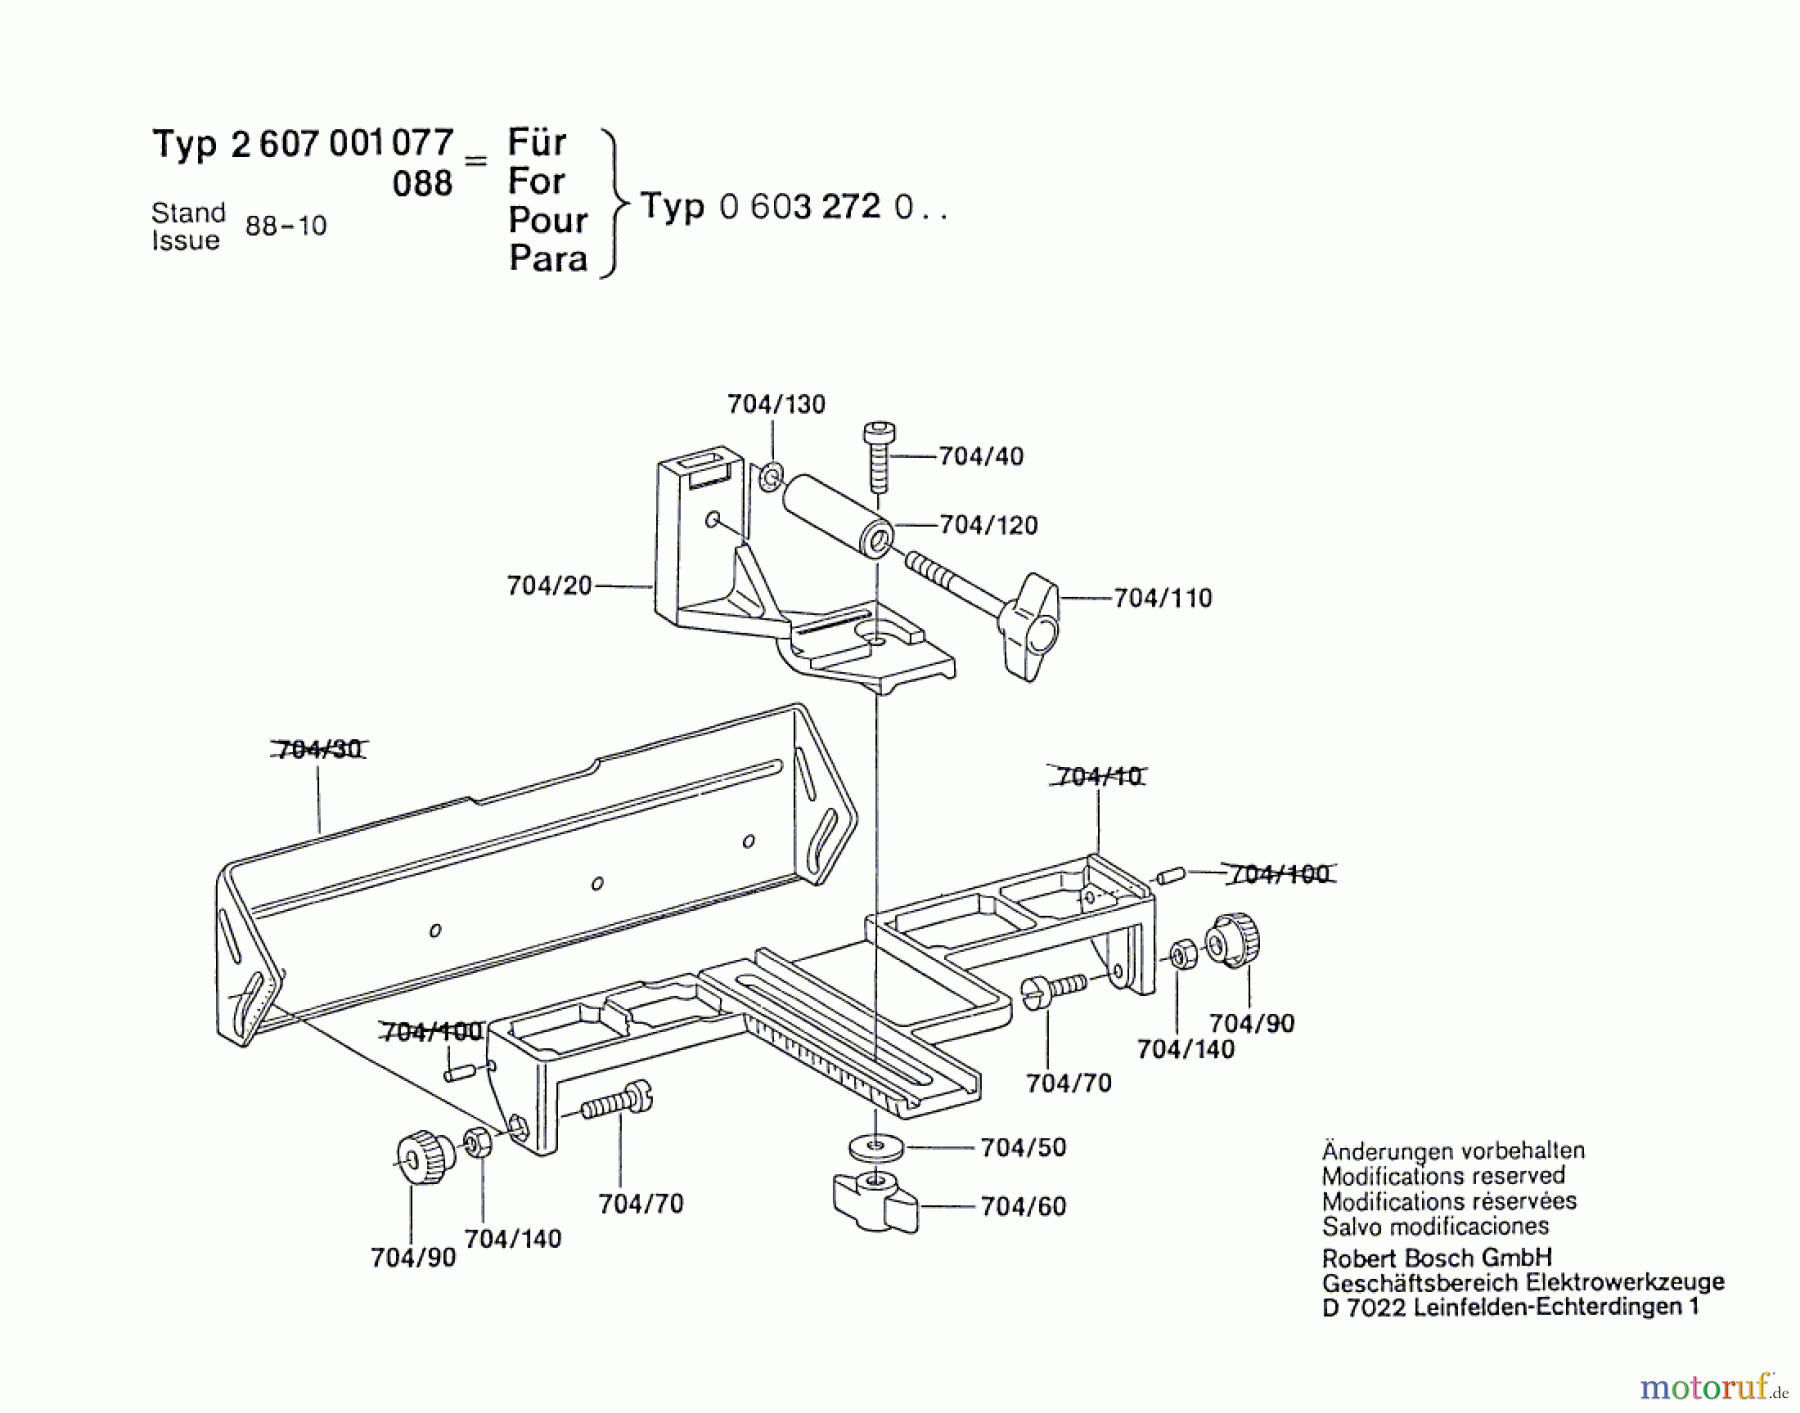  Bosch Werkzeug Parallelanschlag ---- Seite 1